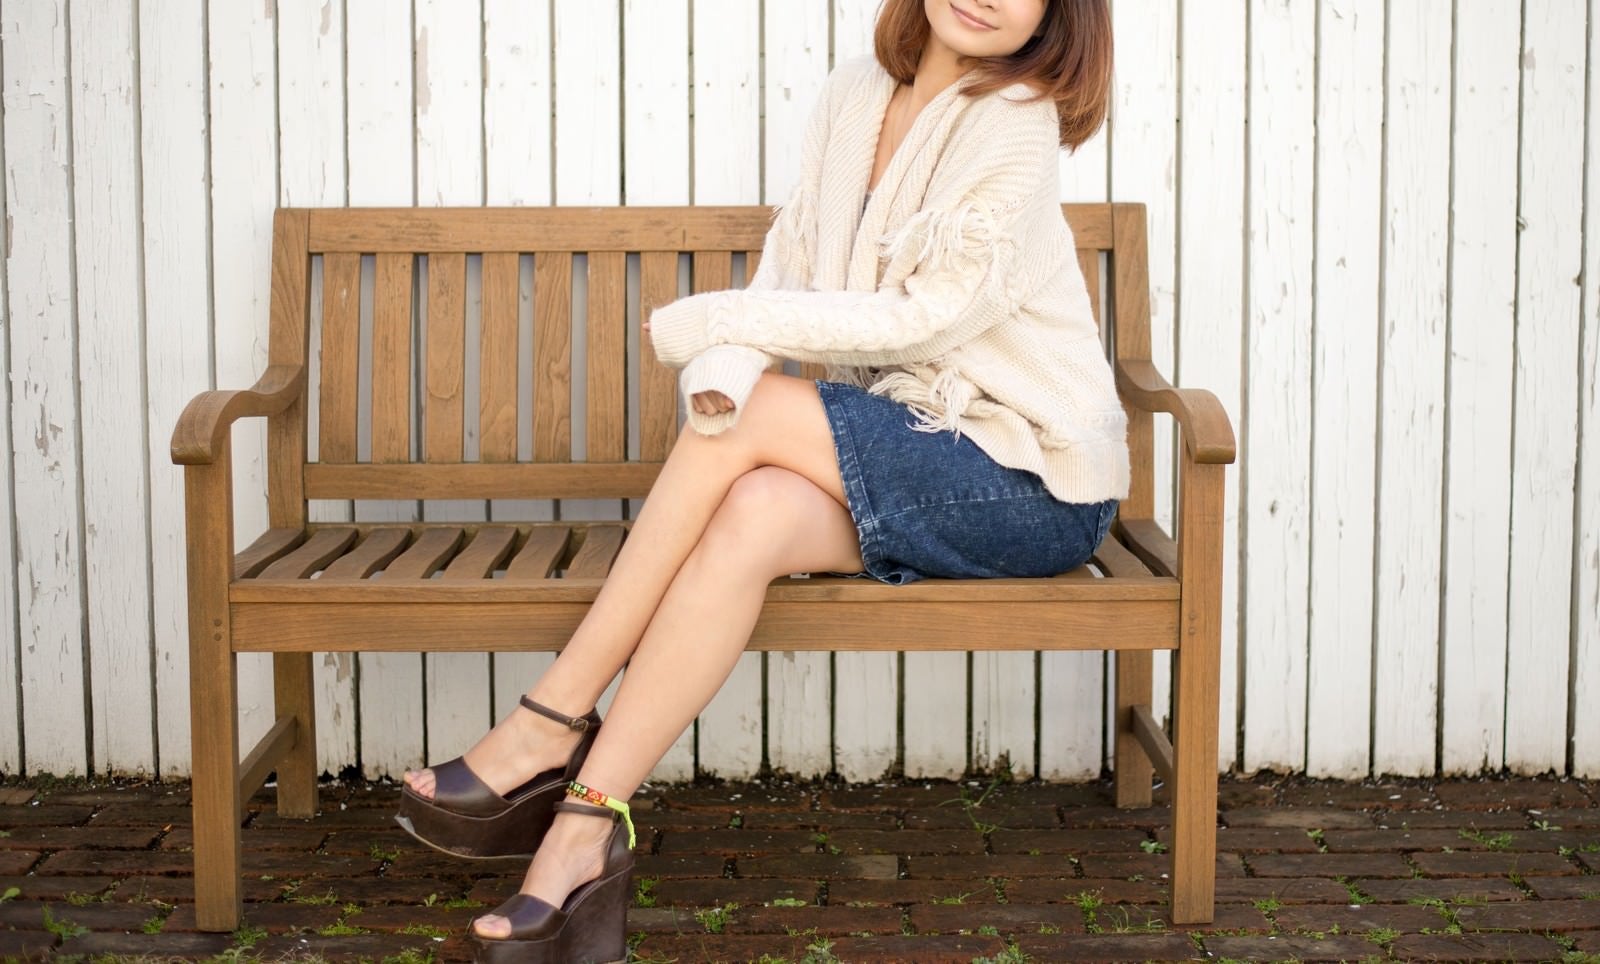 「ベンチに腰掛ける若い女性」の写真